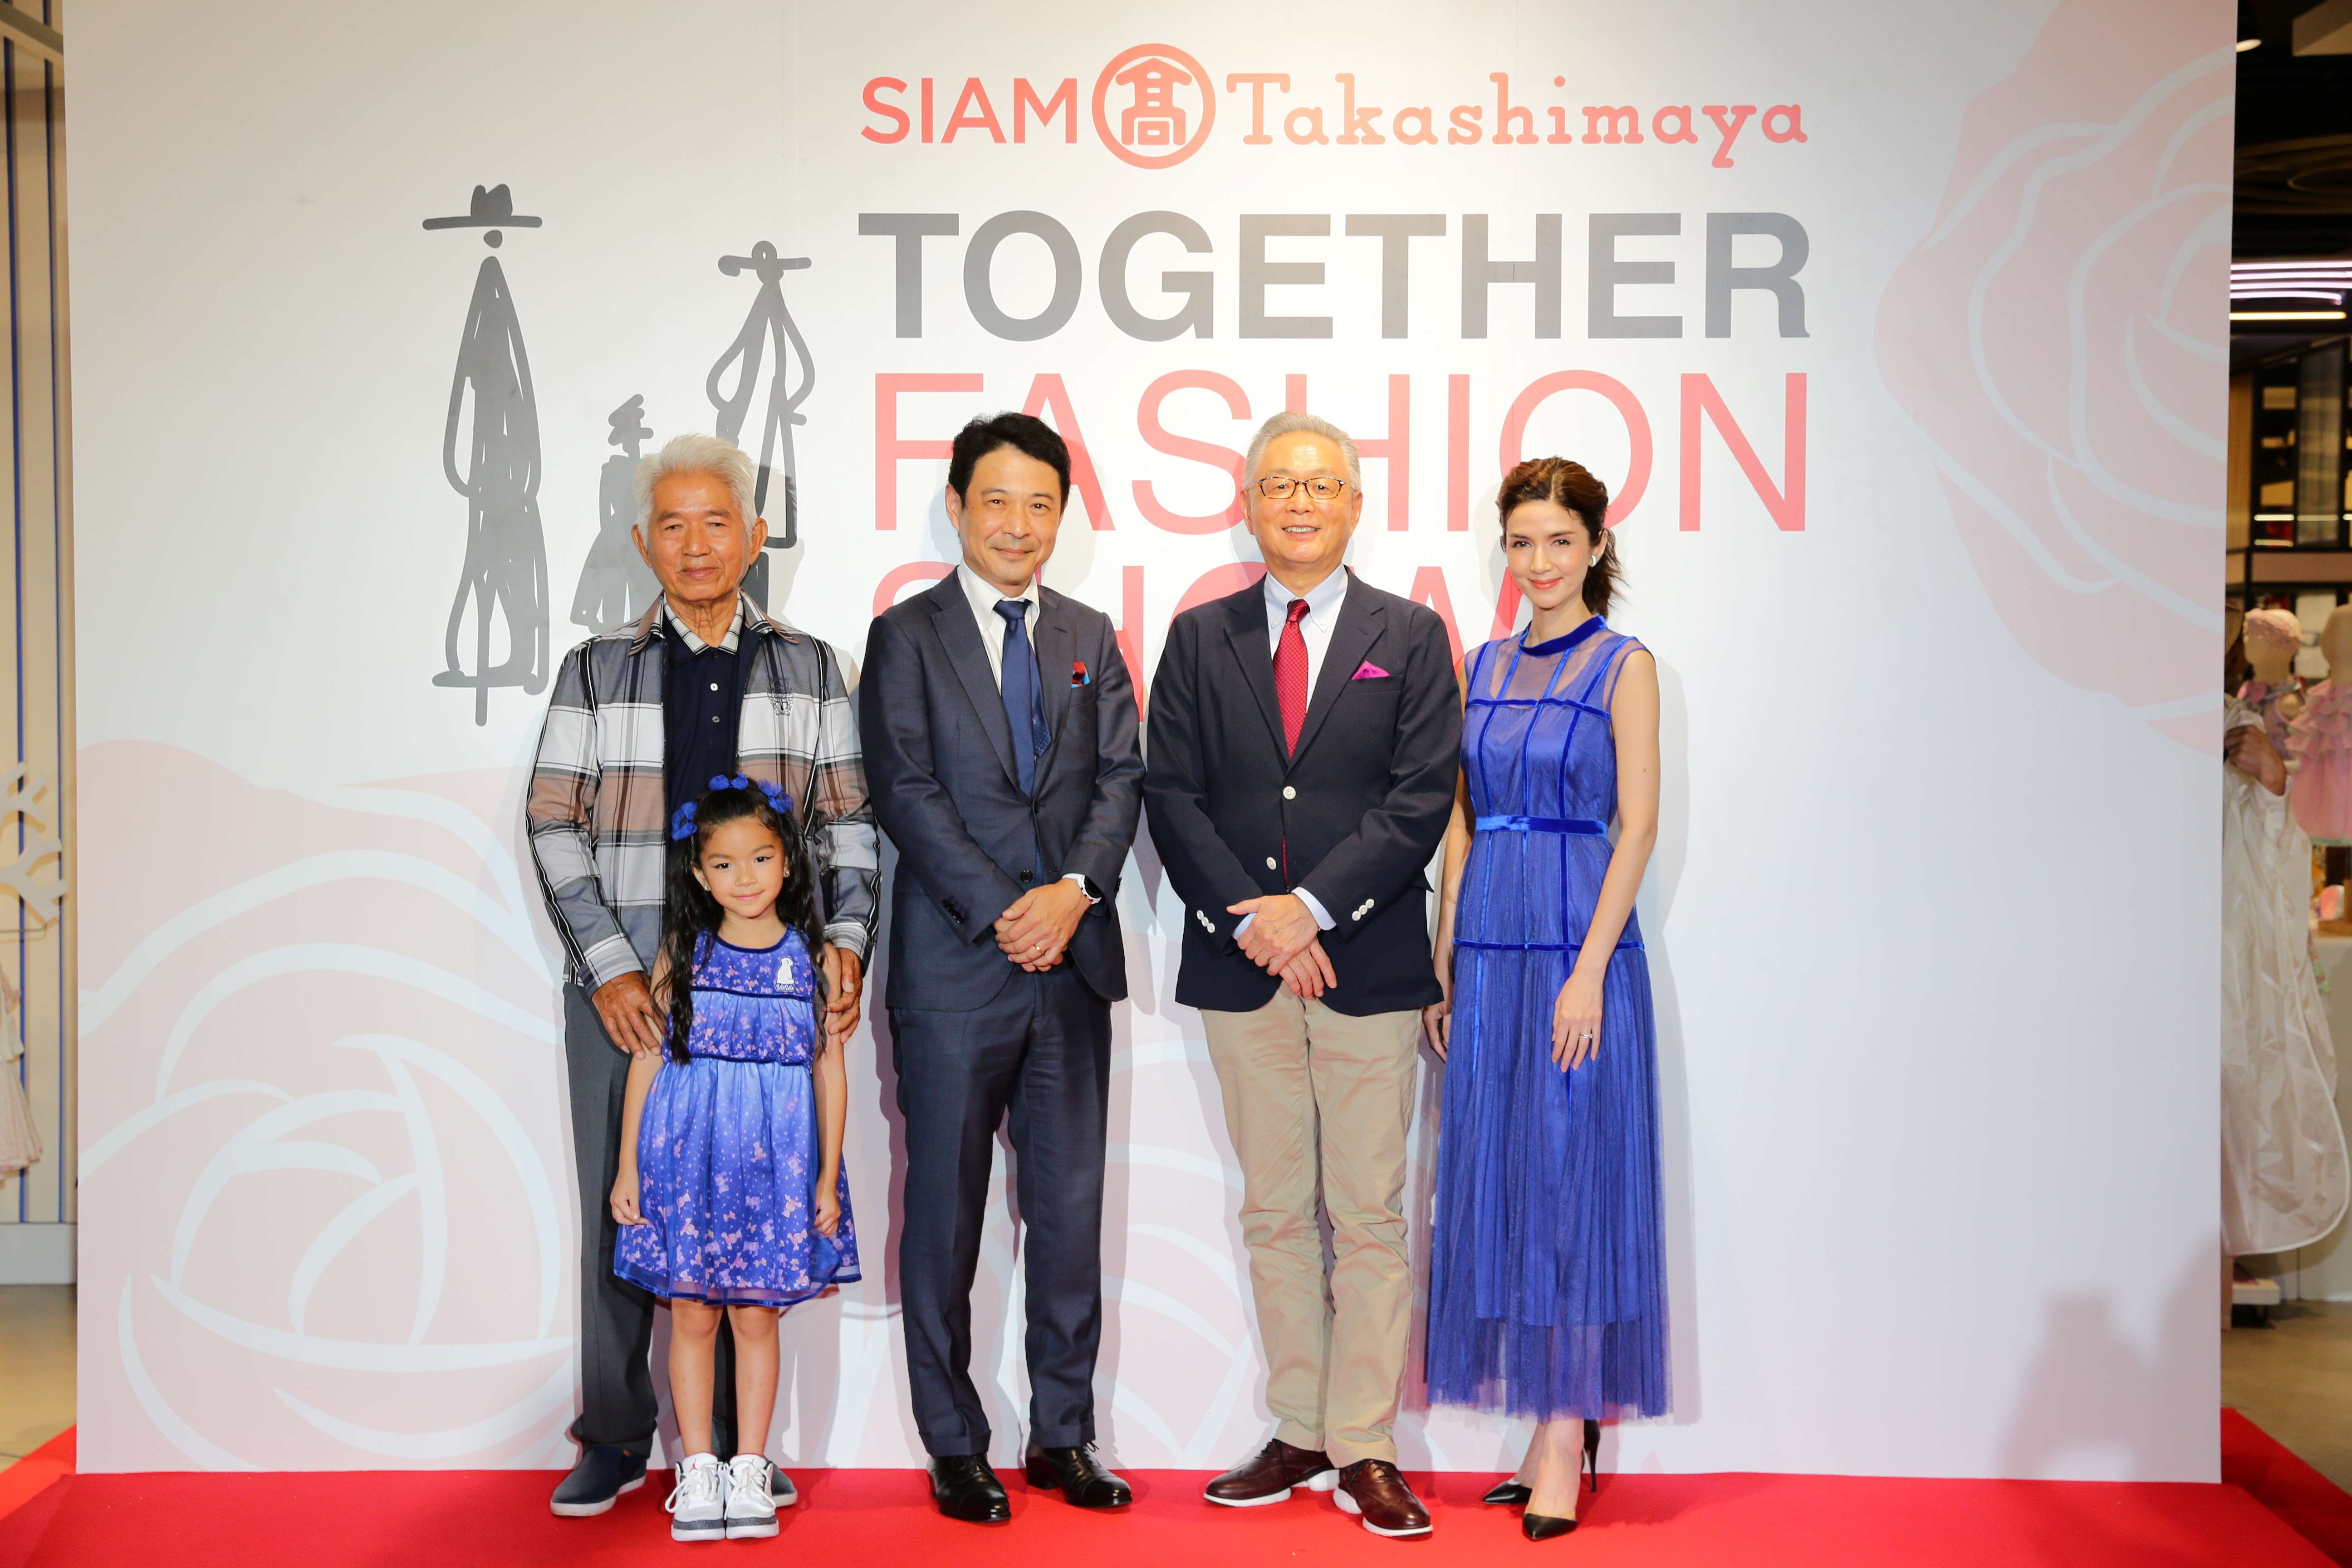 ห้างสยาม ทาคาชิมายะ ฉลองใหญ่ครบรอบ 2 ปี จัดงาน SIAM Takashimaya Together Fashion Show ครั้งแรกกับแฟชั่นโชว์ญี่ปุ่นครบทุกเจเนอเรชั่น